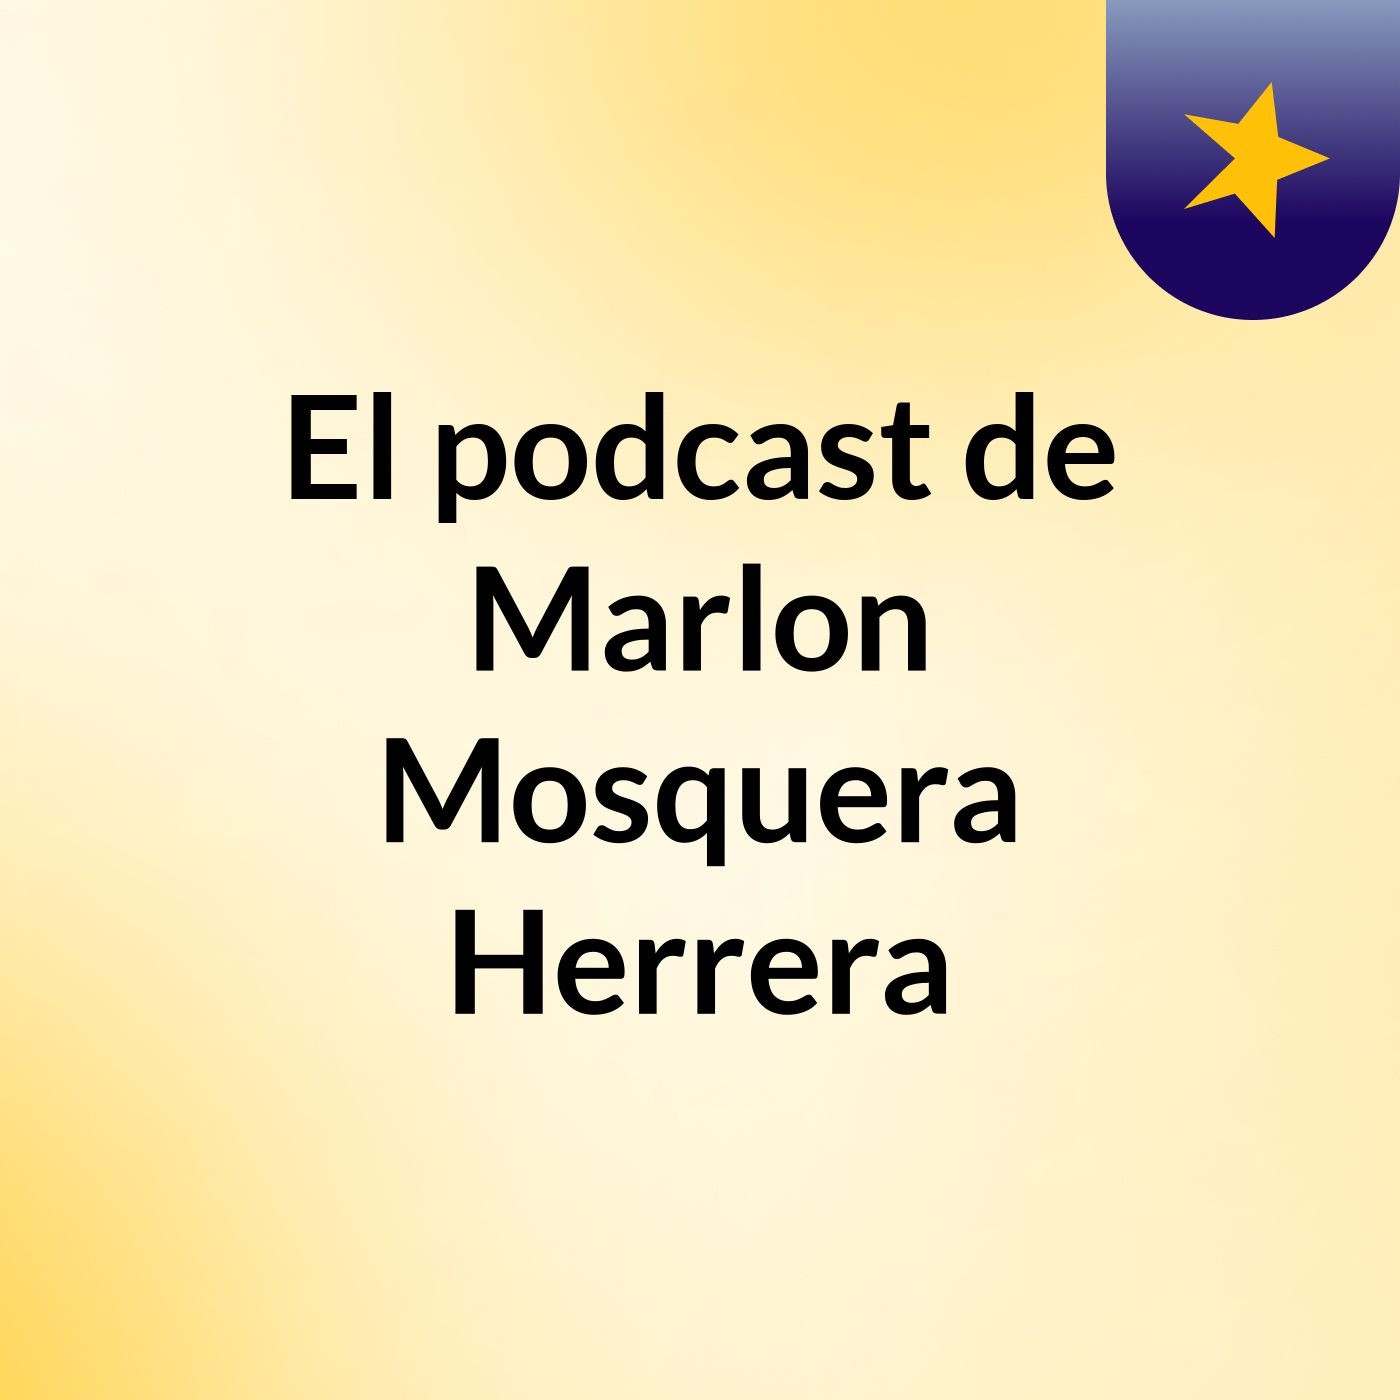 El podcast de Marlon Mosquera Herrera